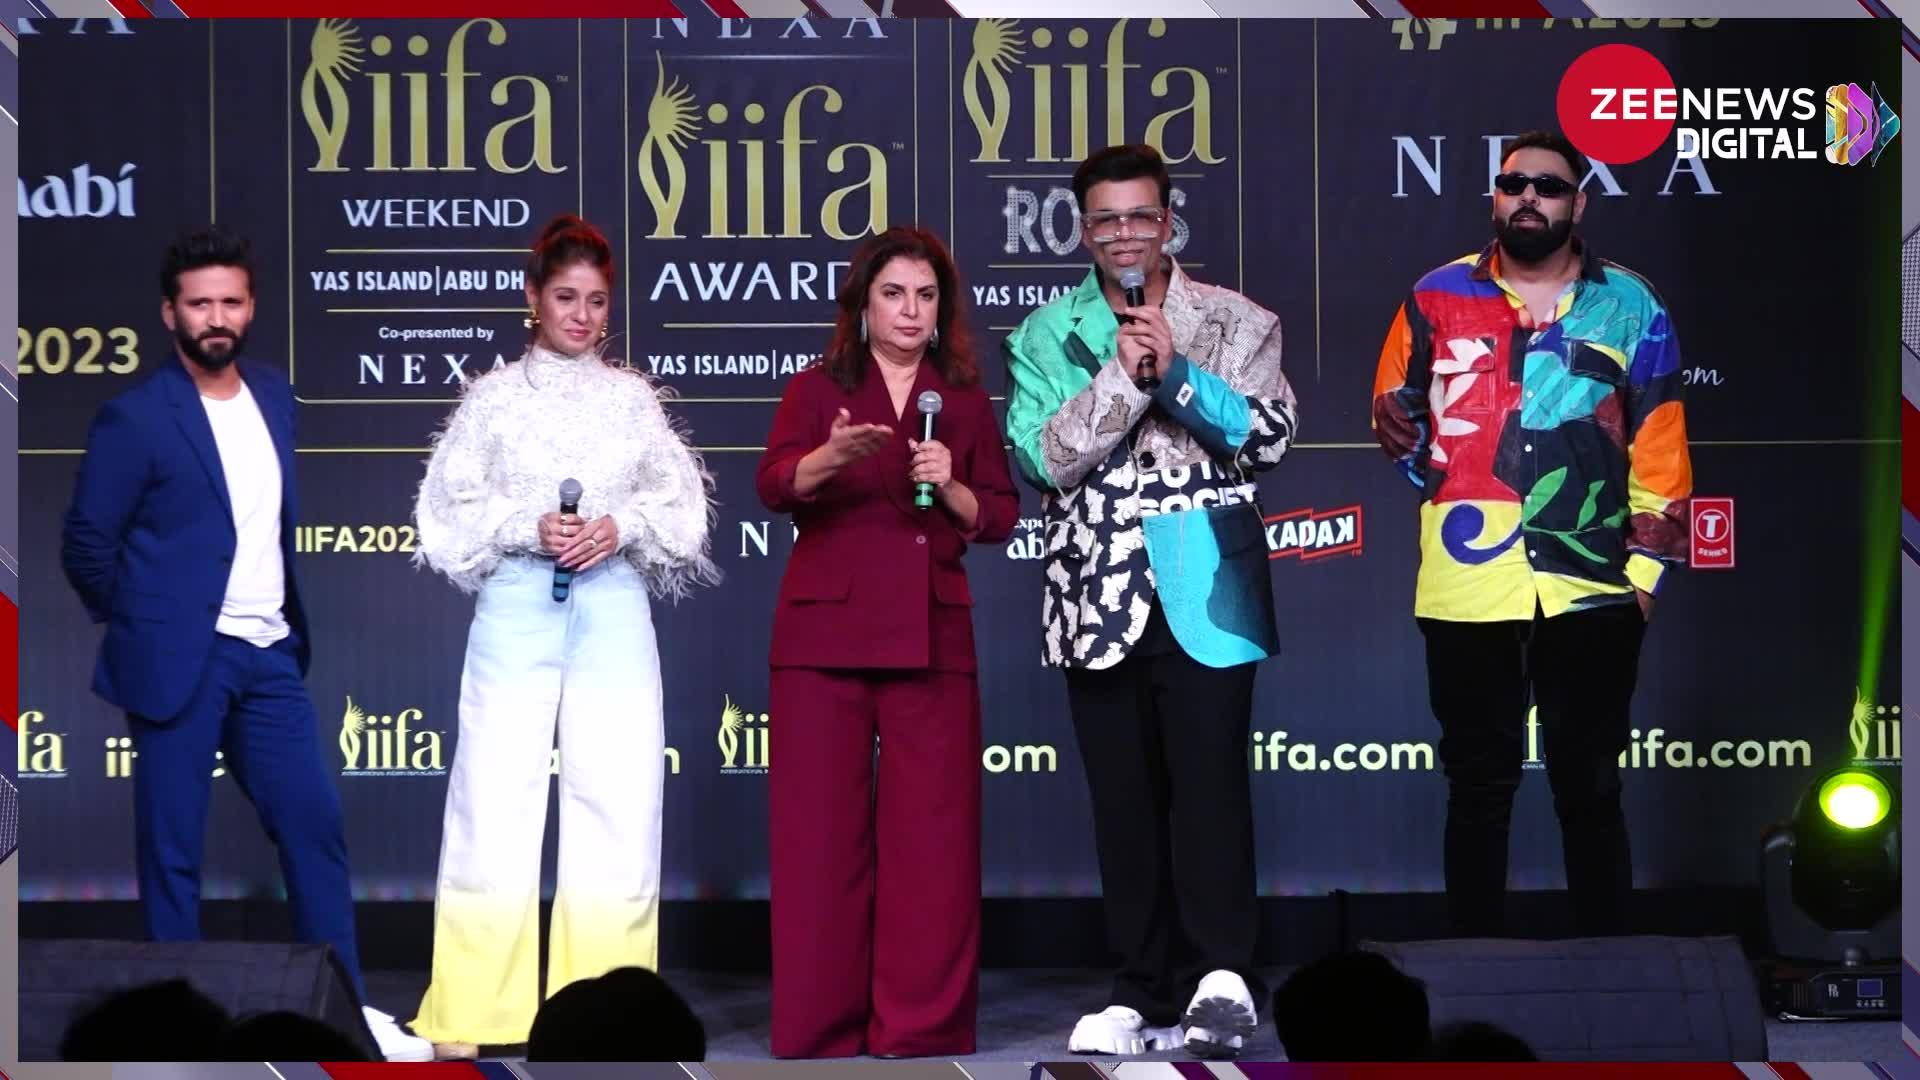 IIFA Awards 2023 की प्रेस कॉन्फ्रेंस में सलमान खान, वरुण धवन समेत इन सुपरस्टार्स ने बिखेरा जलवा